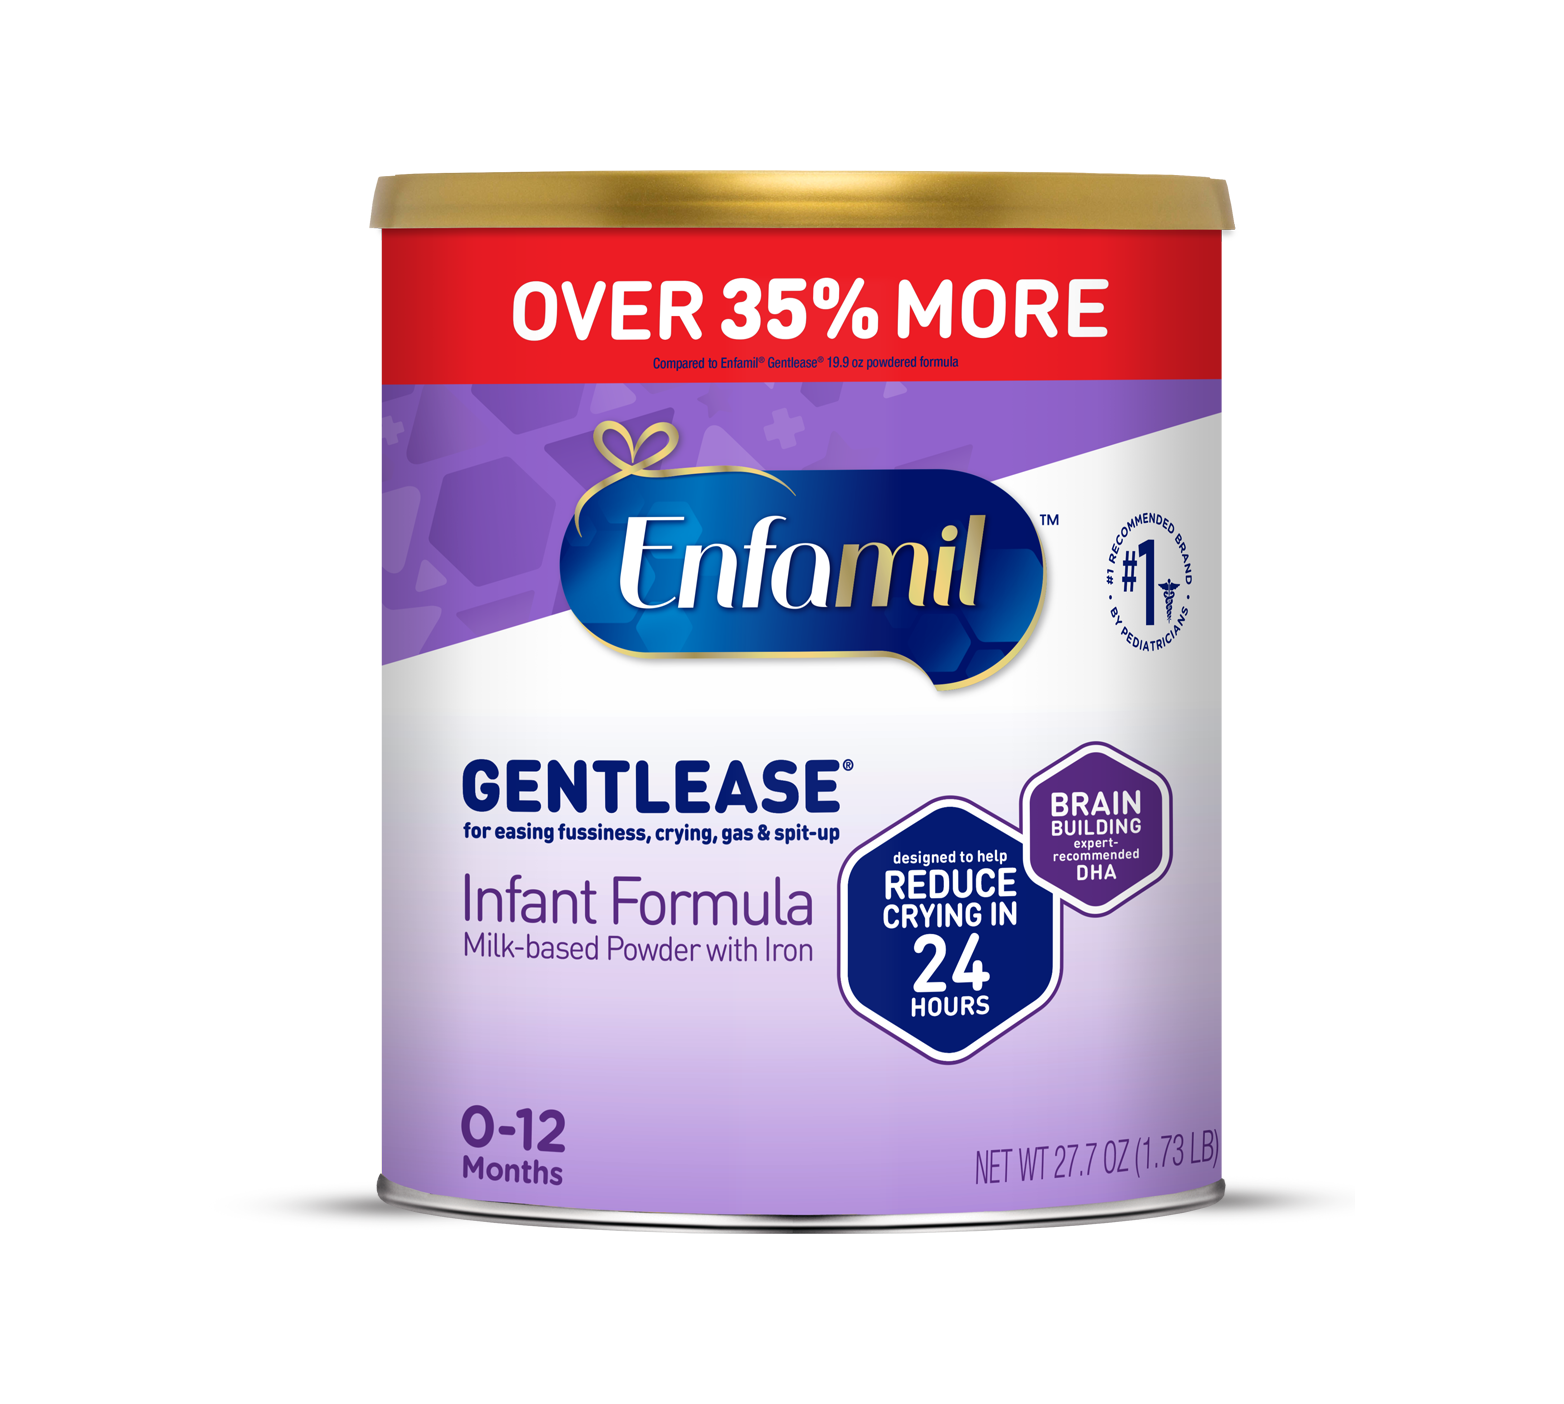 Enfamil® Gentlease Infant Formula - Powder - 19.9 oz Can - Online